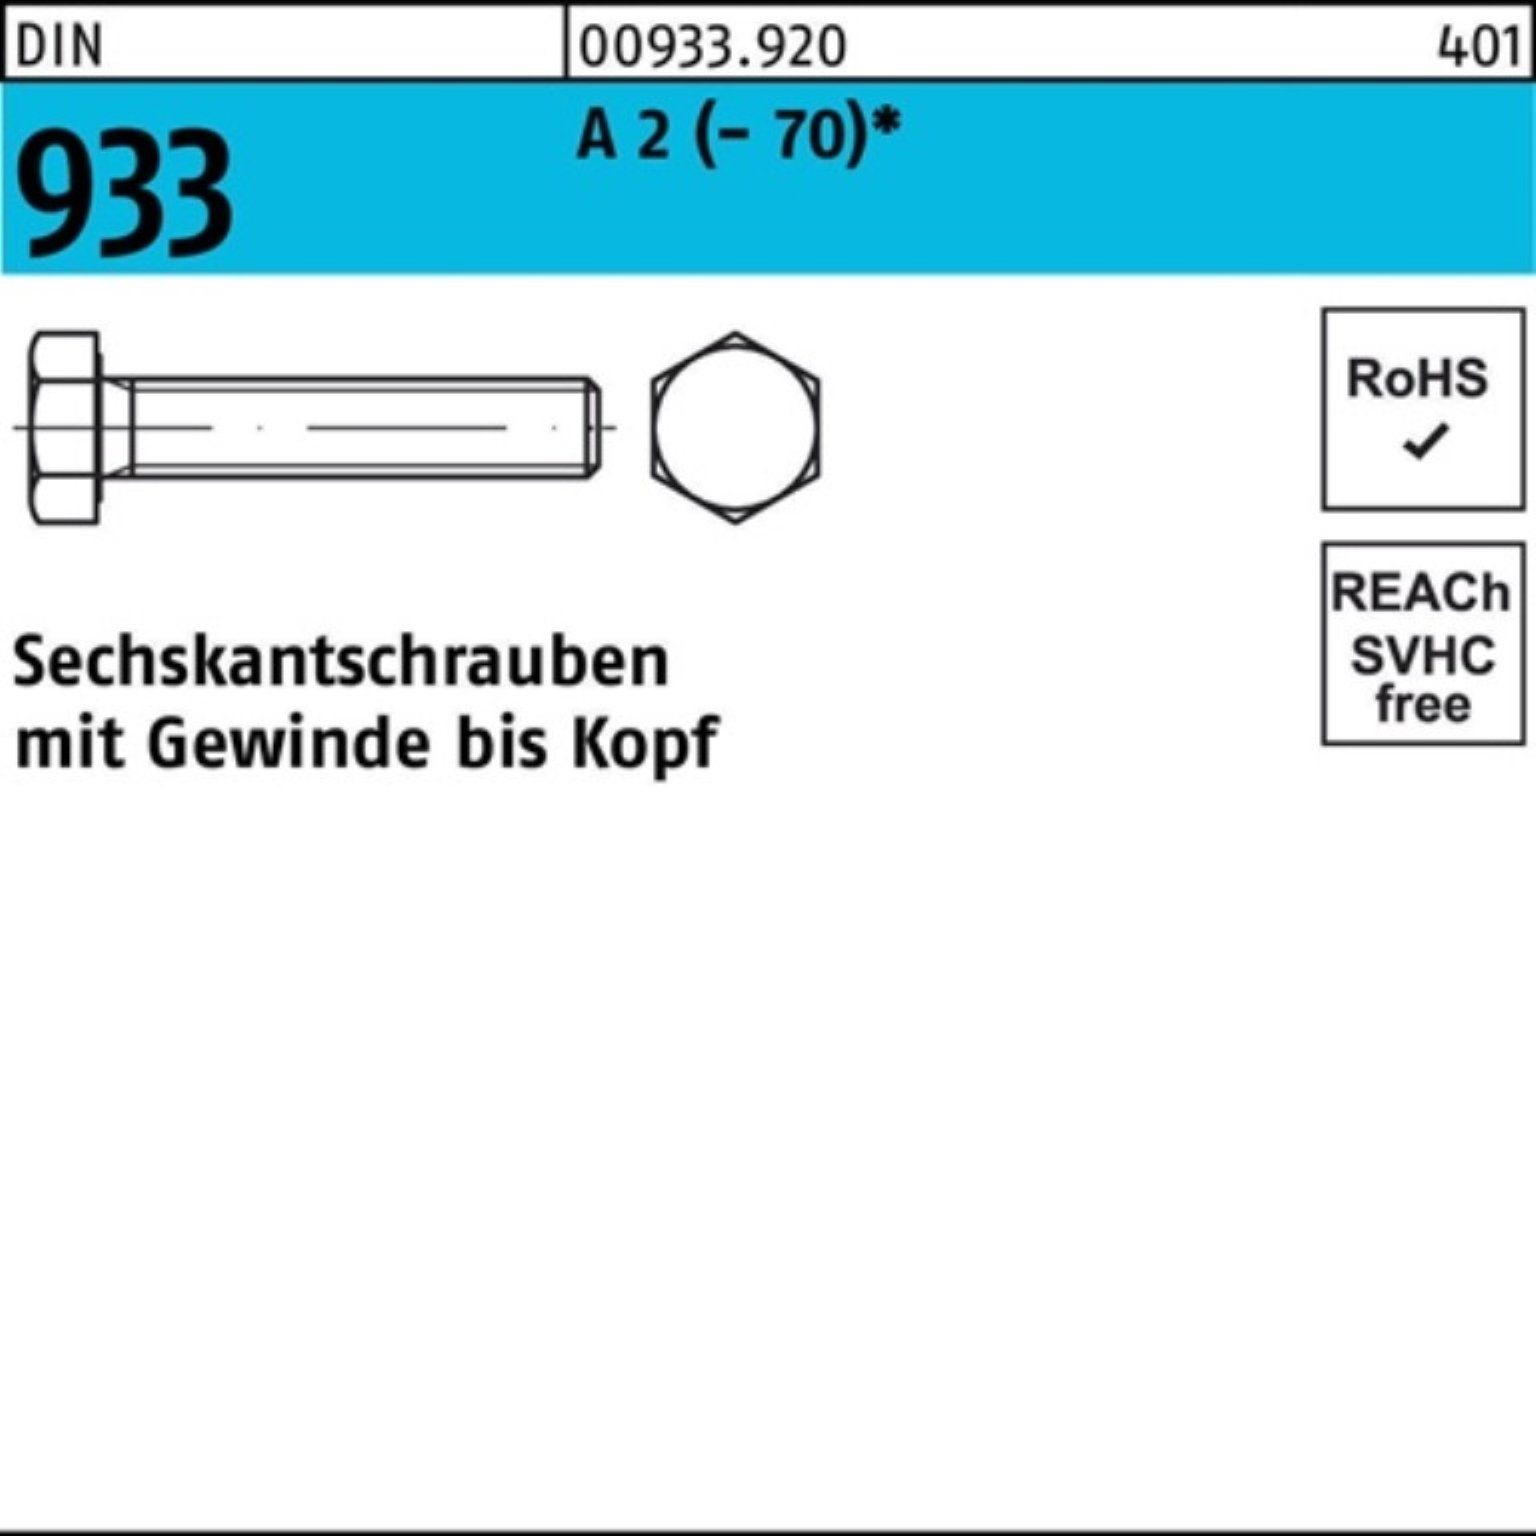 Reyher Sechskantschraube DIN Pack A 10 D 933 2 (70) Stück 100er 80 VG M24x Sechskantschraube